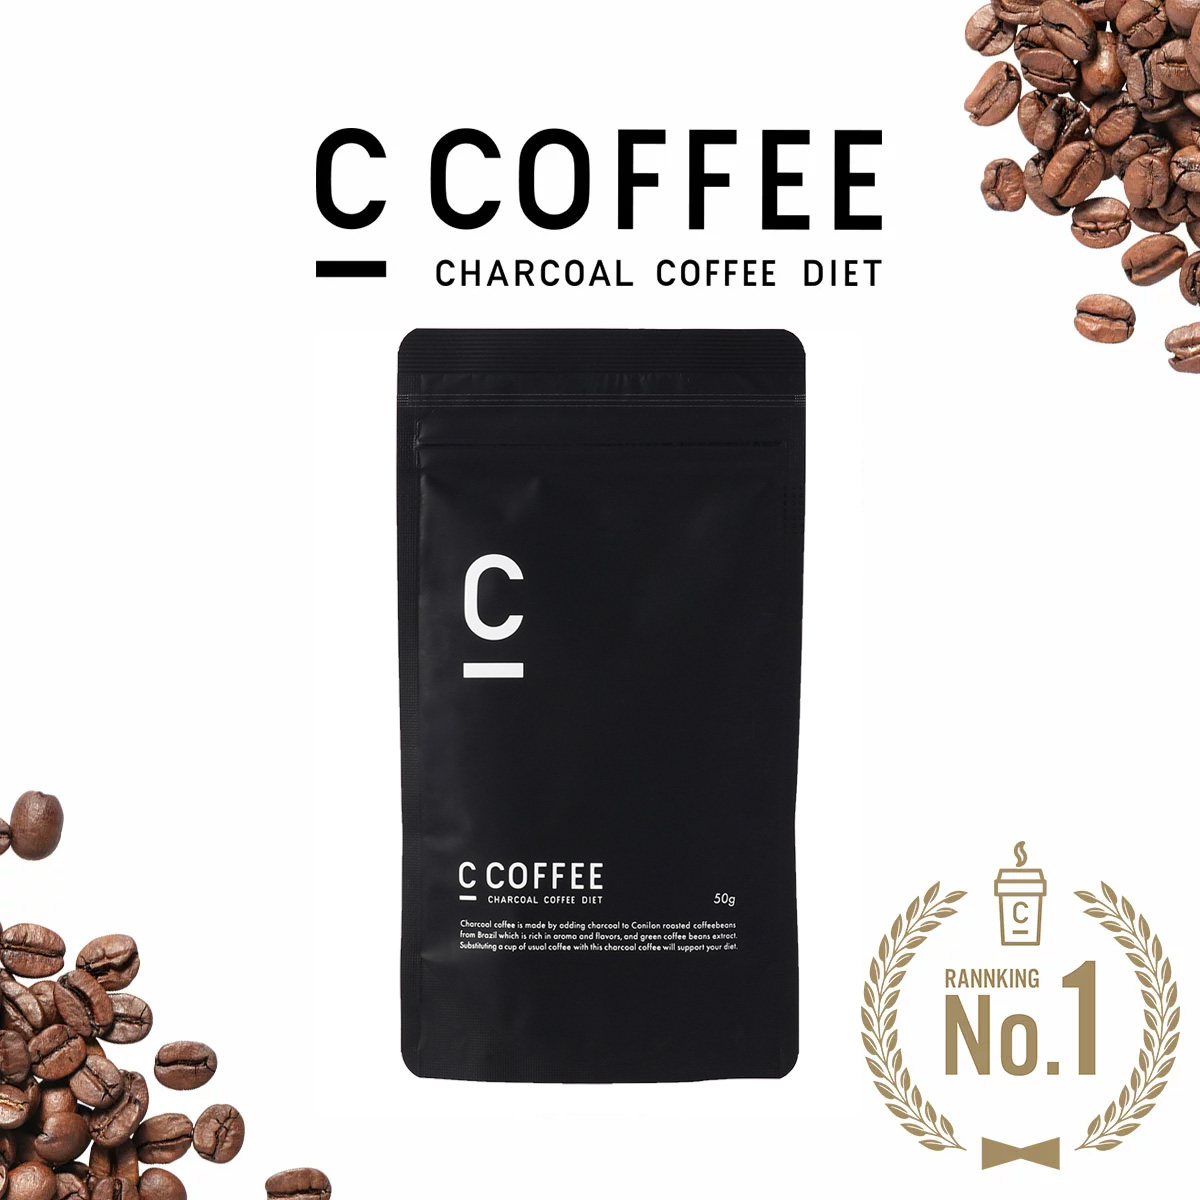 【公式】C COFFEE シーコーヒー ハーフサイズ 50g ダイエットコーヒー チャコールクレンズ MCTオイル ダイエット  コーヒー チャコールコーヒー 人気 ccoffee ダイエット飲料 炭コーヒー プレゼント MEJの通販 